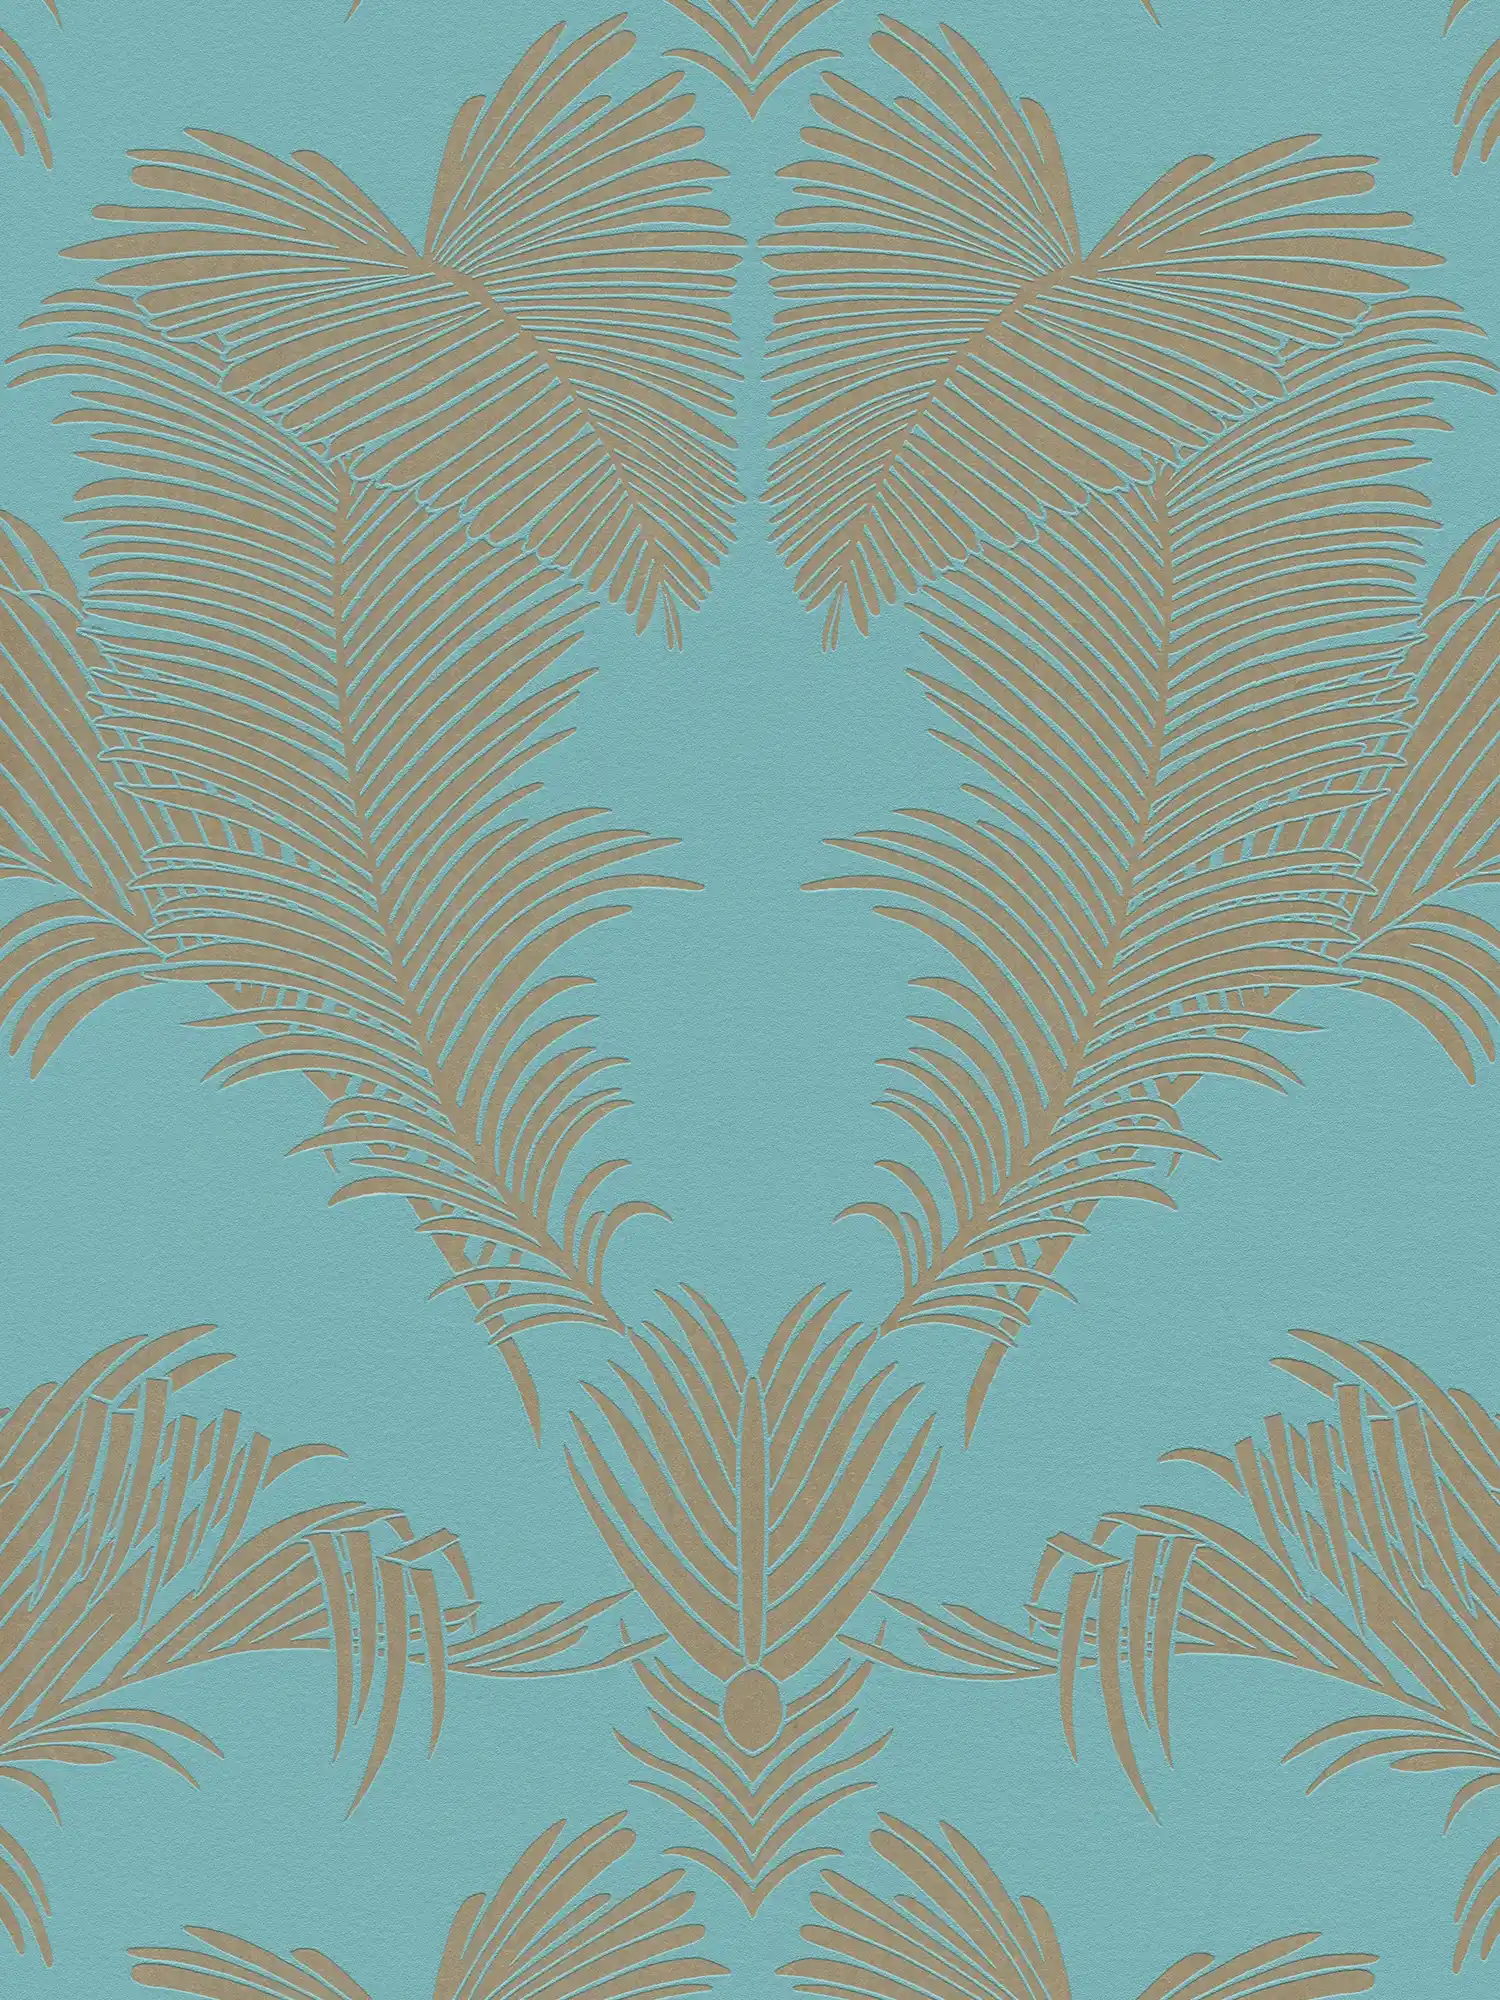 Papel pintado no tejido turquesa con motivo de hojas en oro metálico
